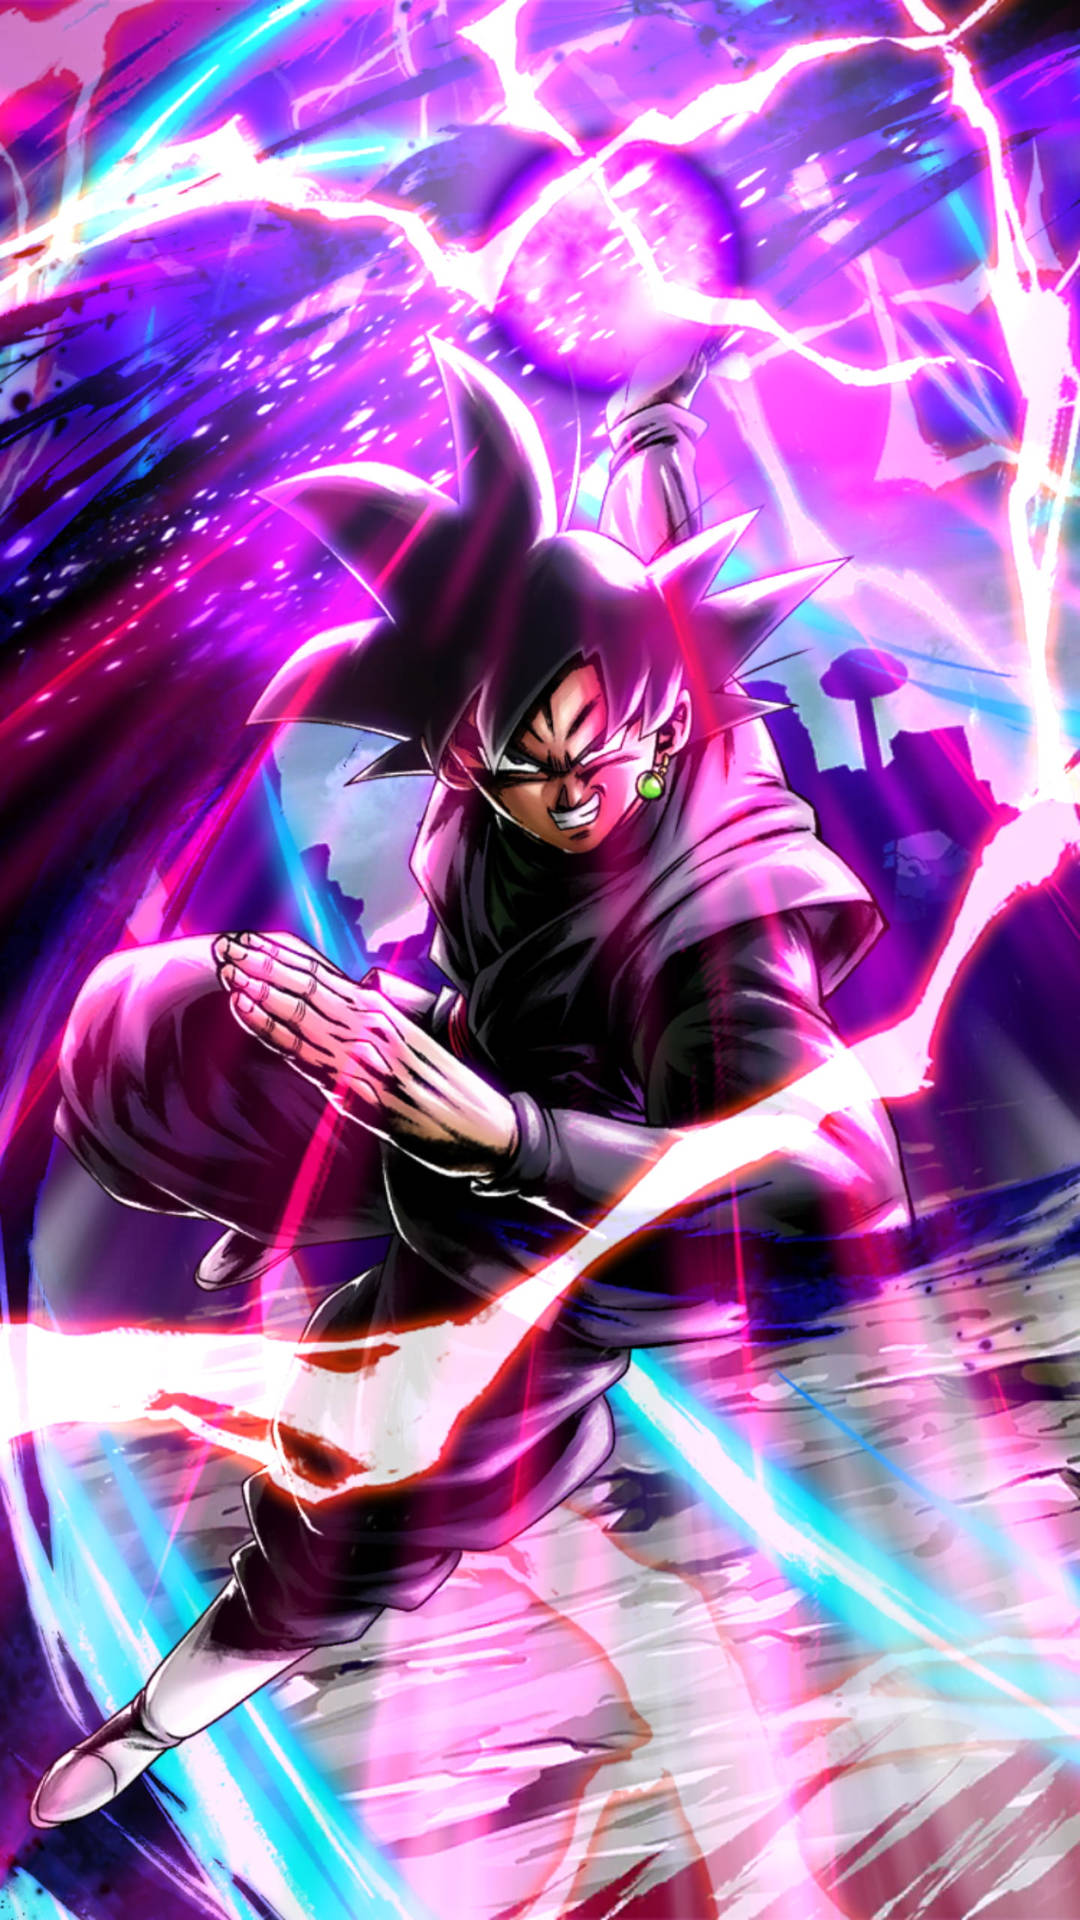 Nếu bạn muốn sở hữu một tác phẩm nghệ thuật đầy sức mạnh, hình nền Energy Ball của Black Goku là lựa chọn đúng đắn. Với những đường nét nổi bật, màu sắc rực rỡ, bạn sẽ không thể chối từ khả năng tải xuống hình nền này để trang trí cho điện thoại của mình.